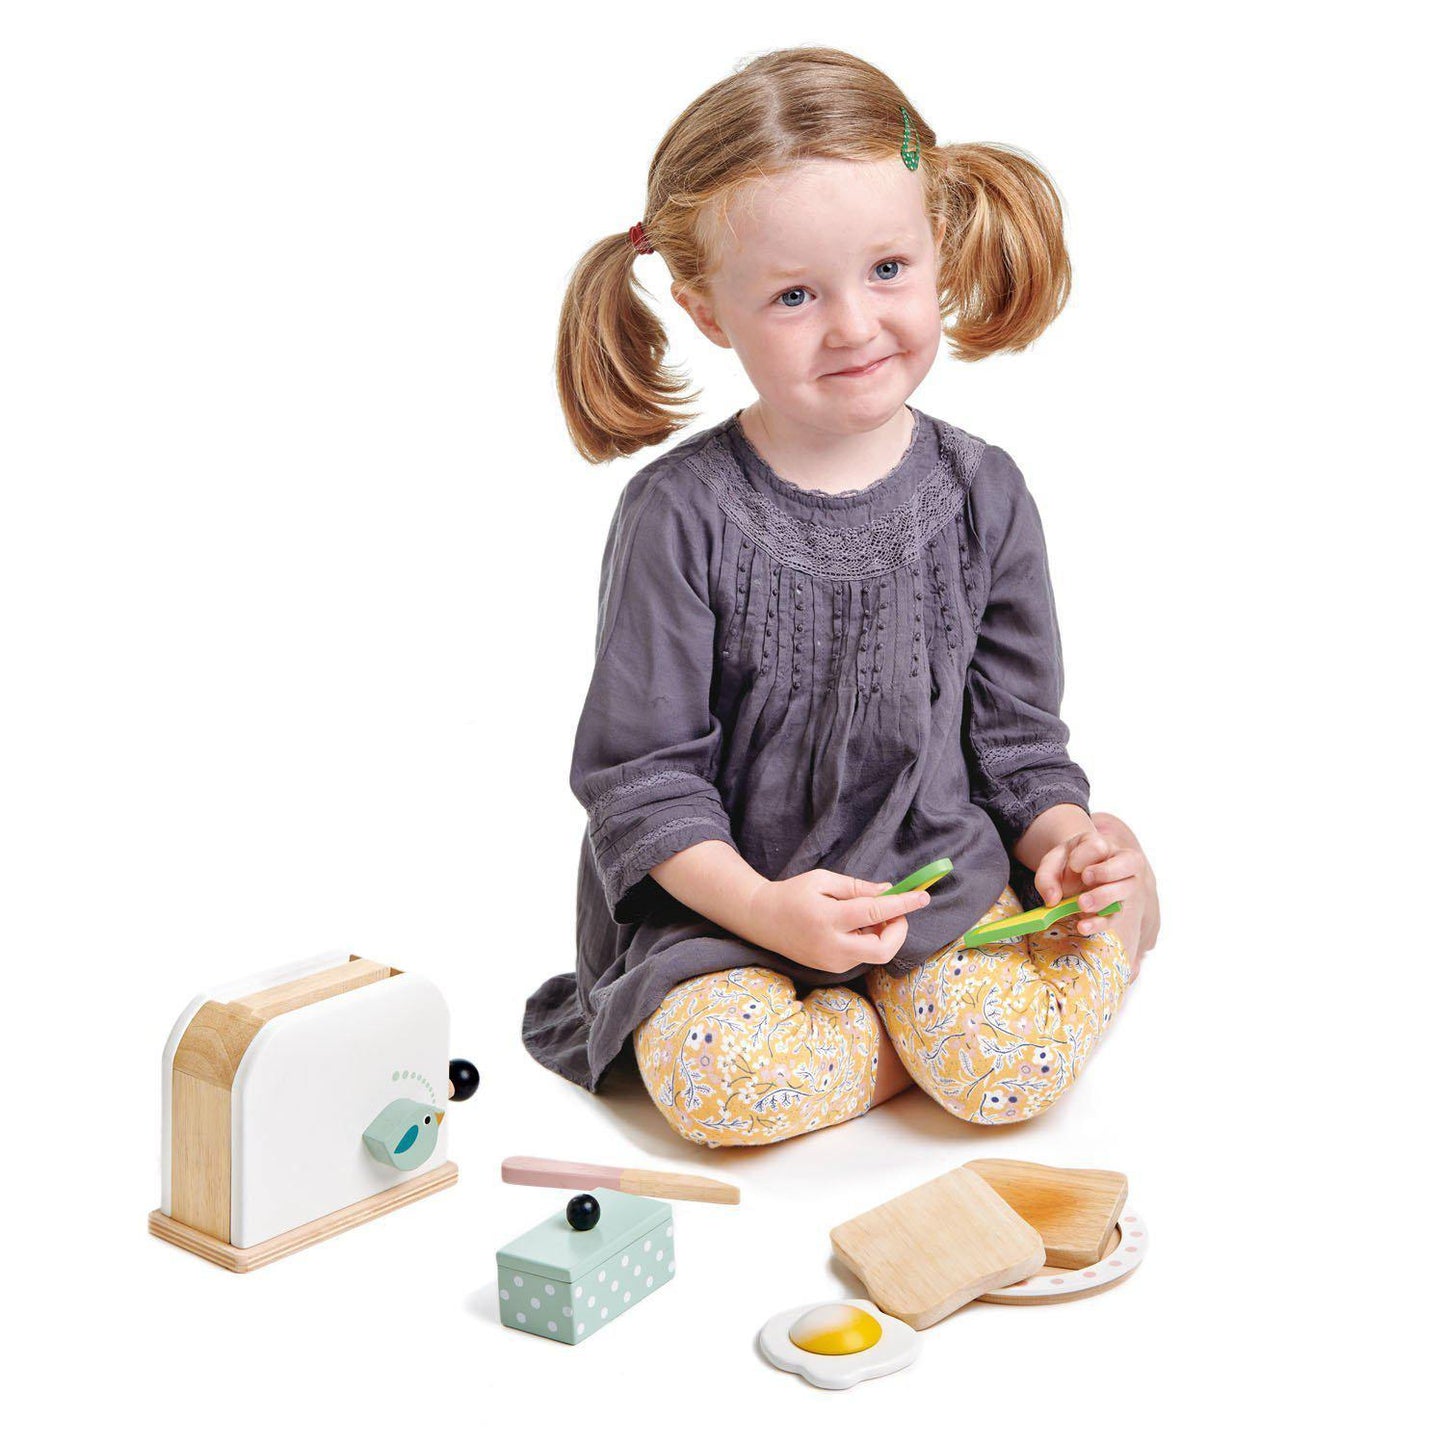 Kenyérpirító, prémium minőségű fából - Breakfast toaster - 10 darab, pirítós, tojás és kellékek - Tender Leaf Toys-Tender Leaf Toys-3-Játszma.ro - A maradandó élmények boltja